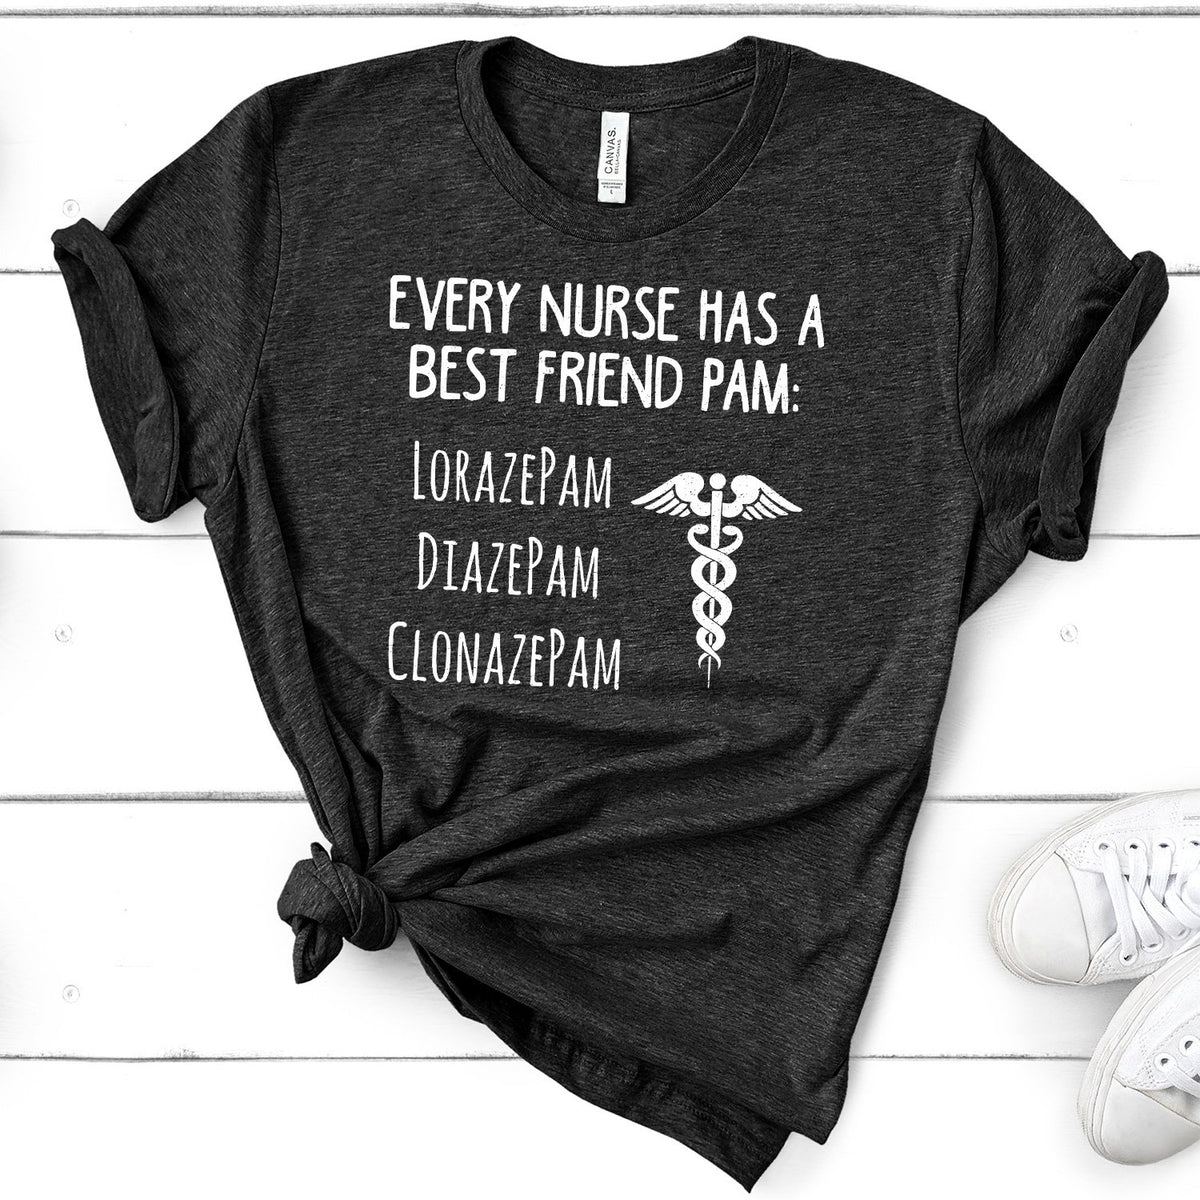 Every Nurse Has A Best Friend Pam - Short Sleeve Tee Shirt